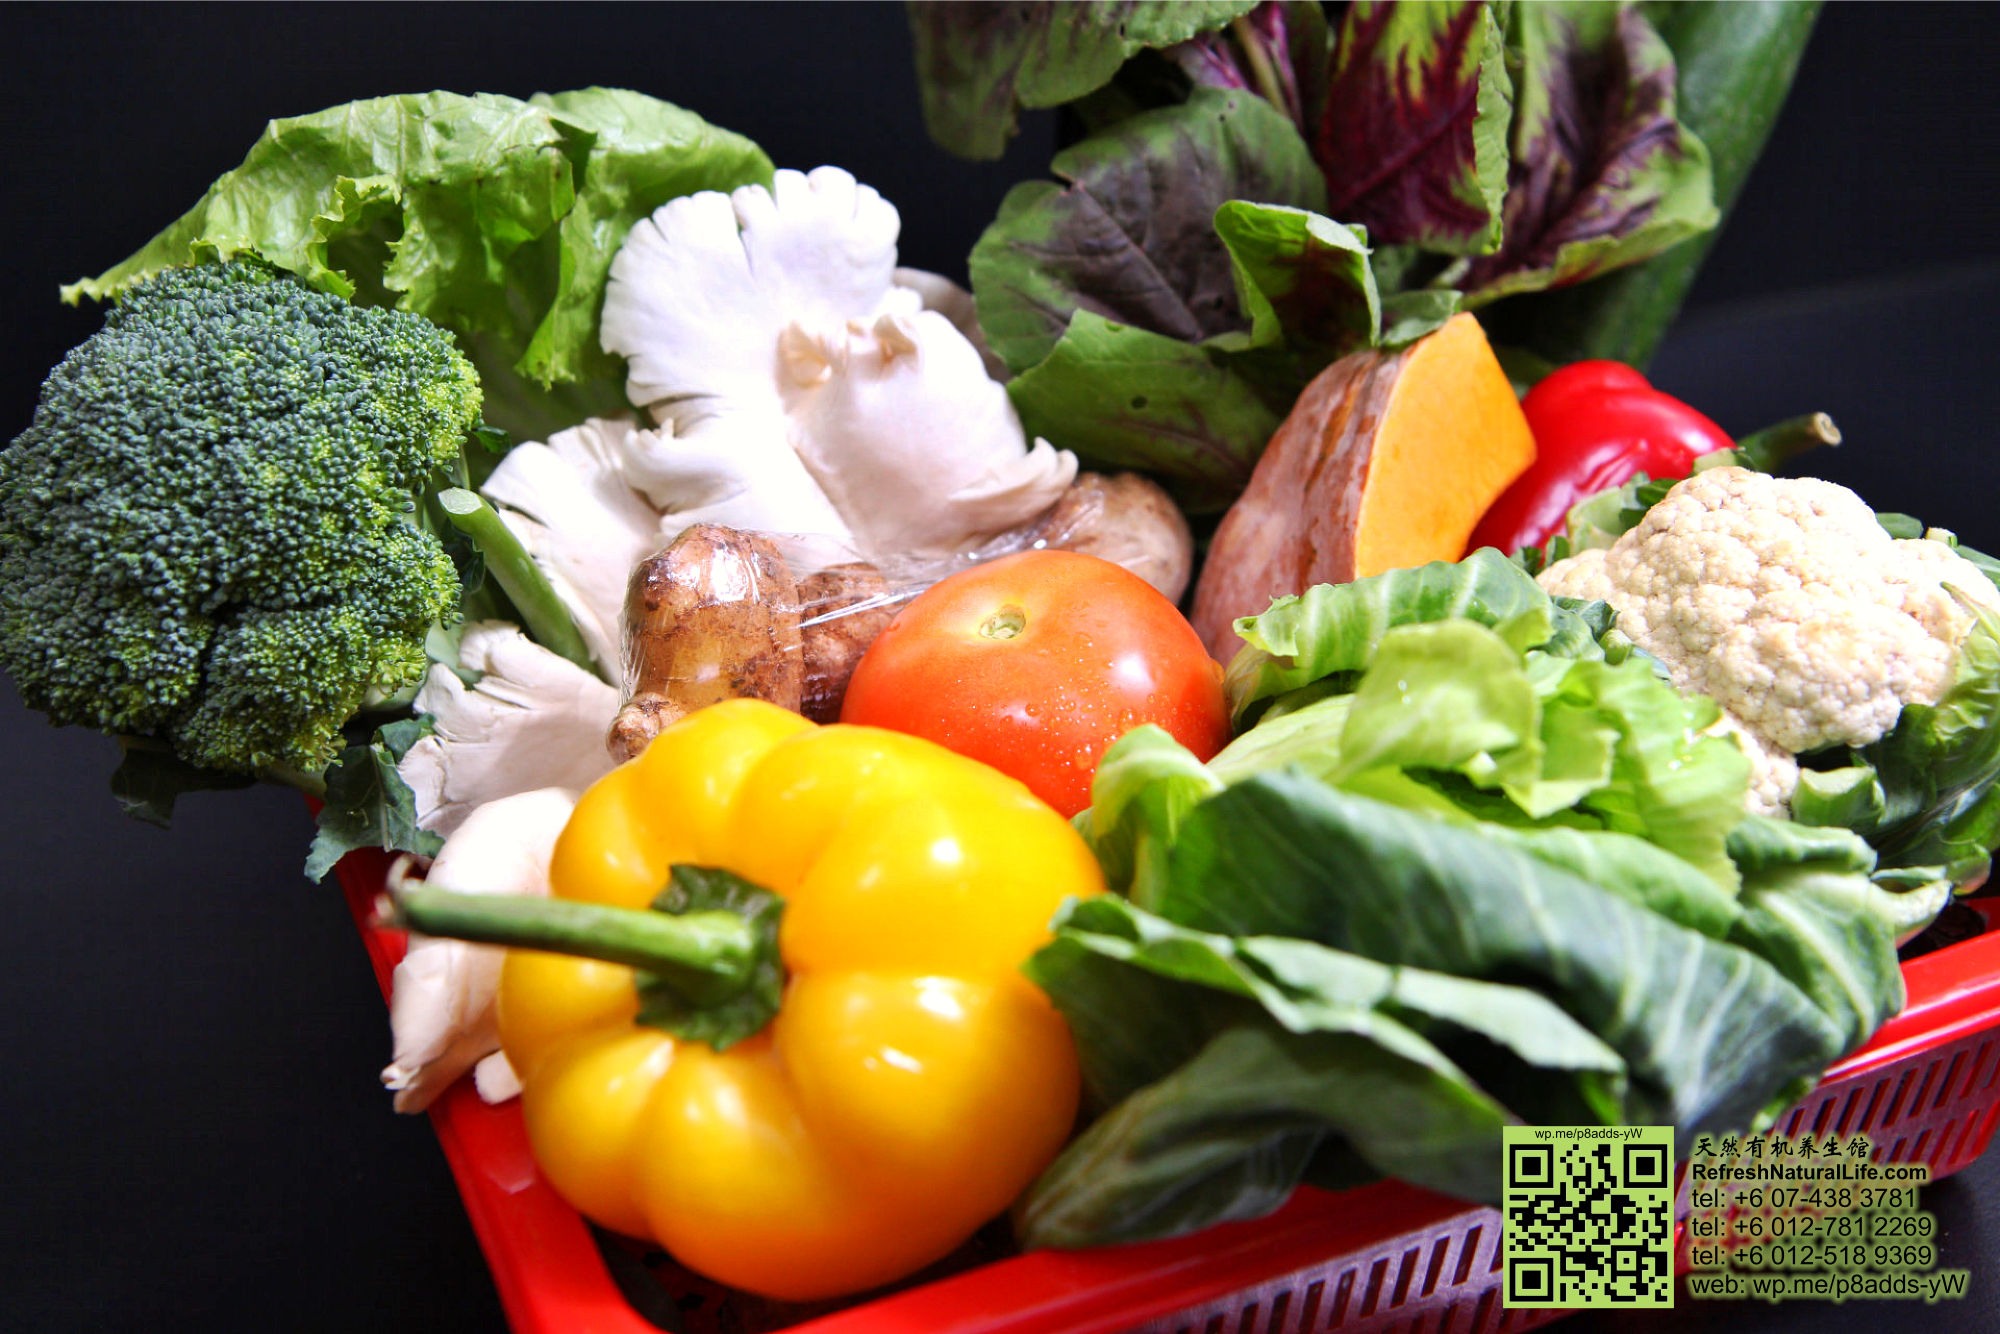 batu-pahat-organic-health-care-organic-sayur-box-vegetable-box-refresh-natural-organic-products-healthy-products-johor-malaysia-%e5%b3%87%e6%a0%aa%e5%90%a7%e8%be%96-%e6%9c%89%e6%9c%ba%e8%94%ac